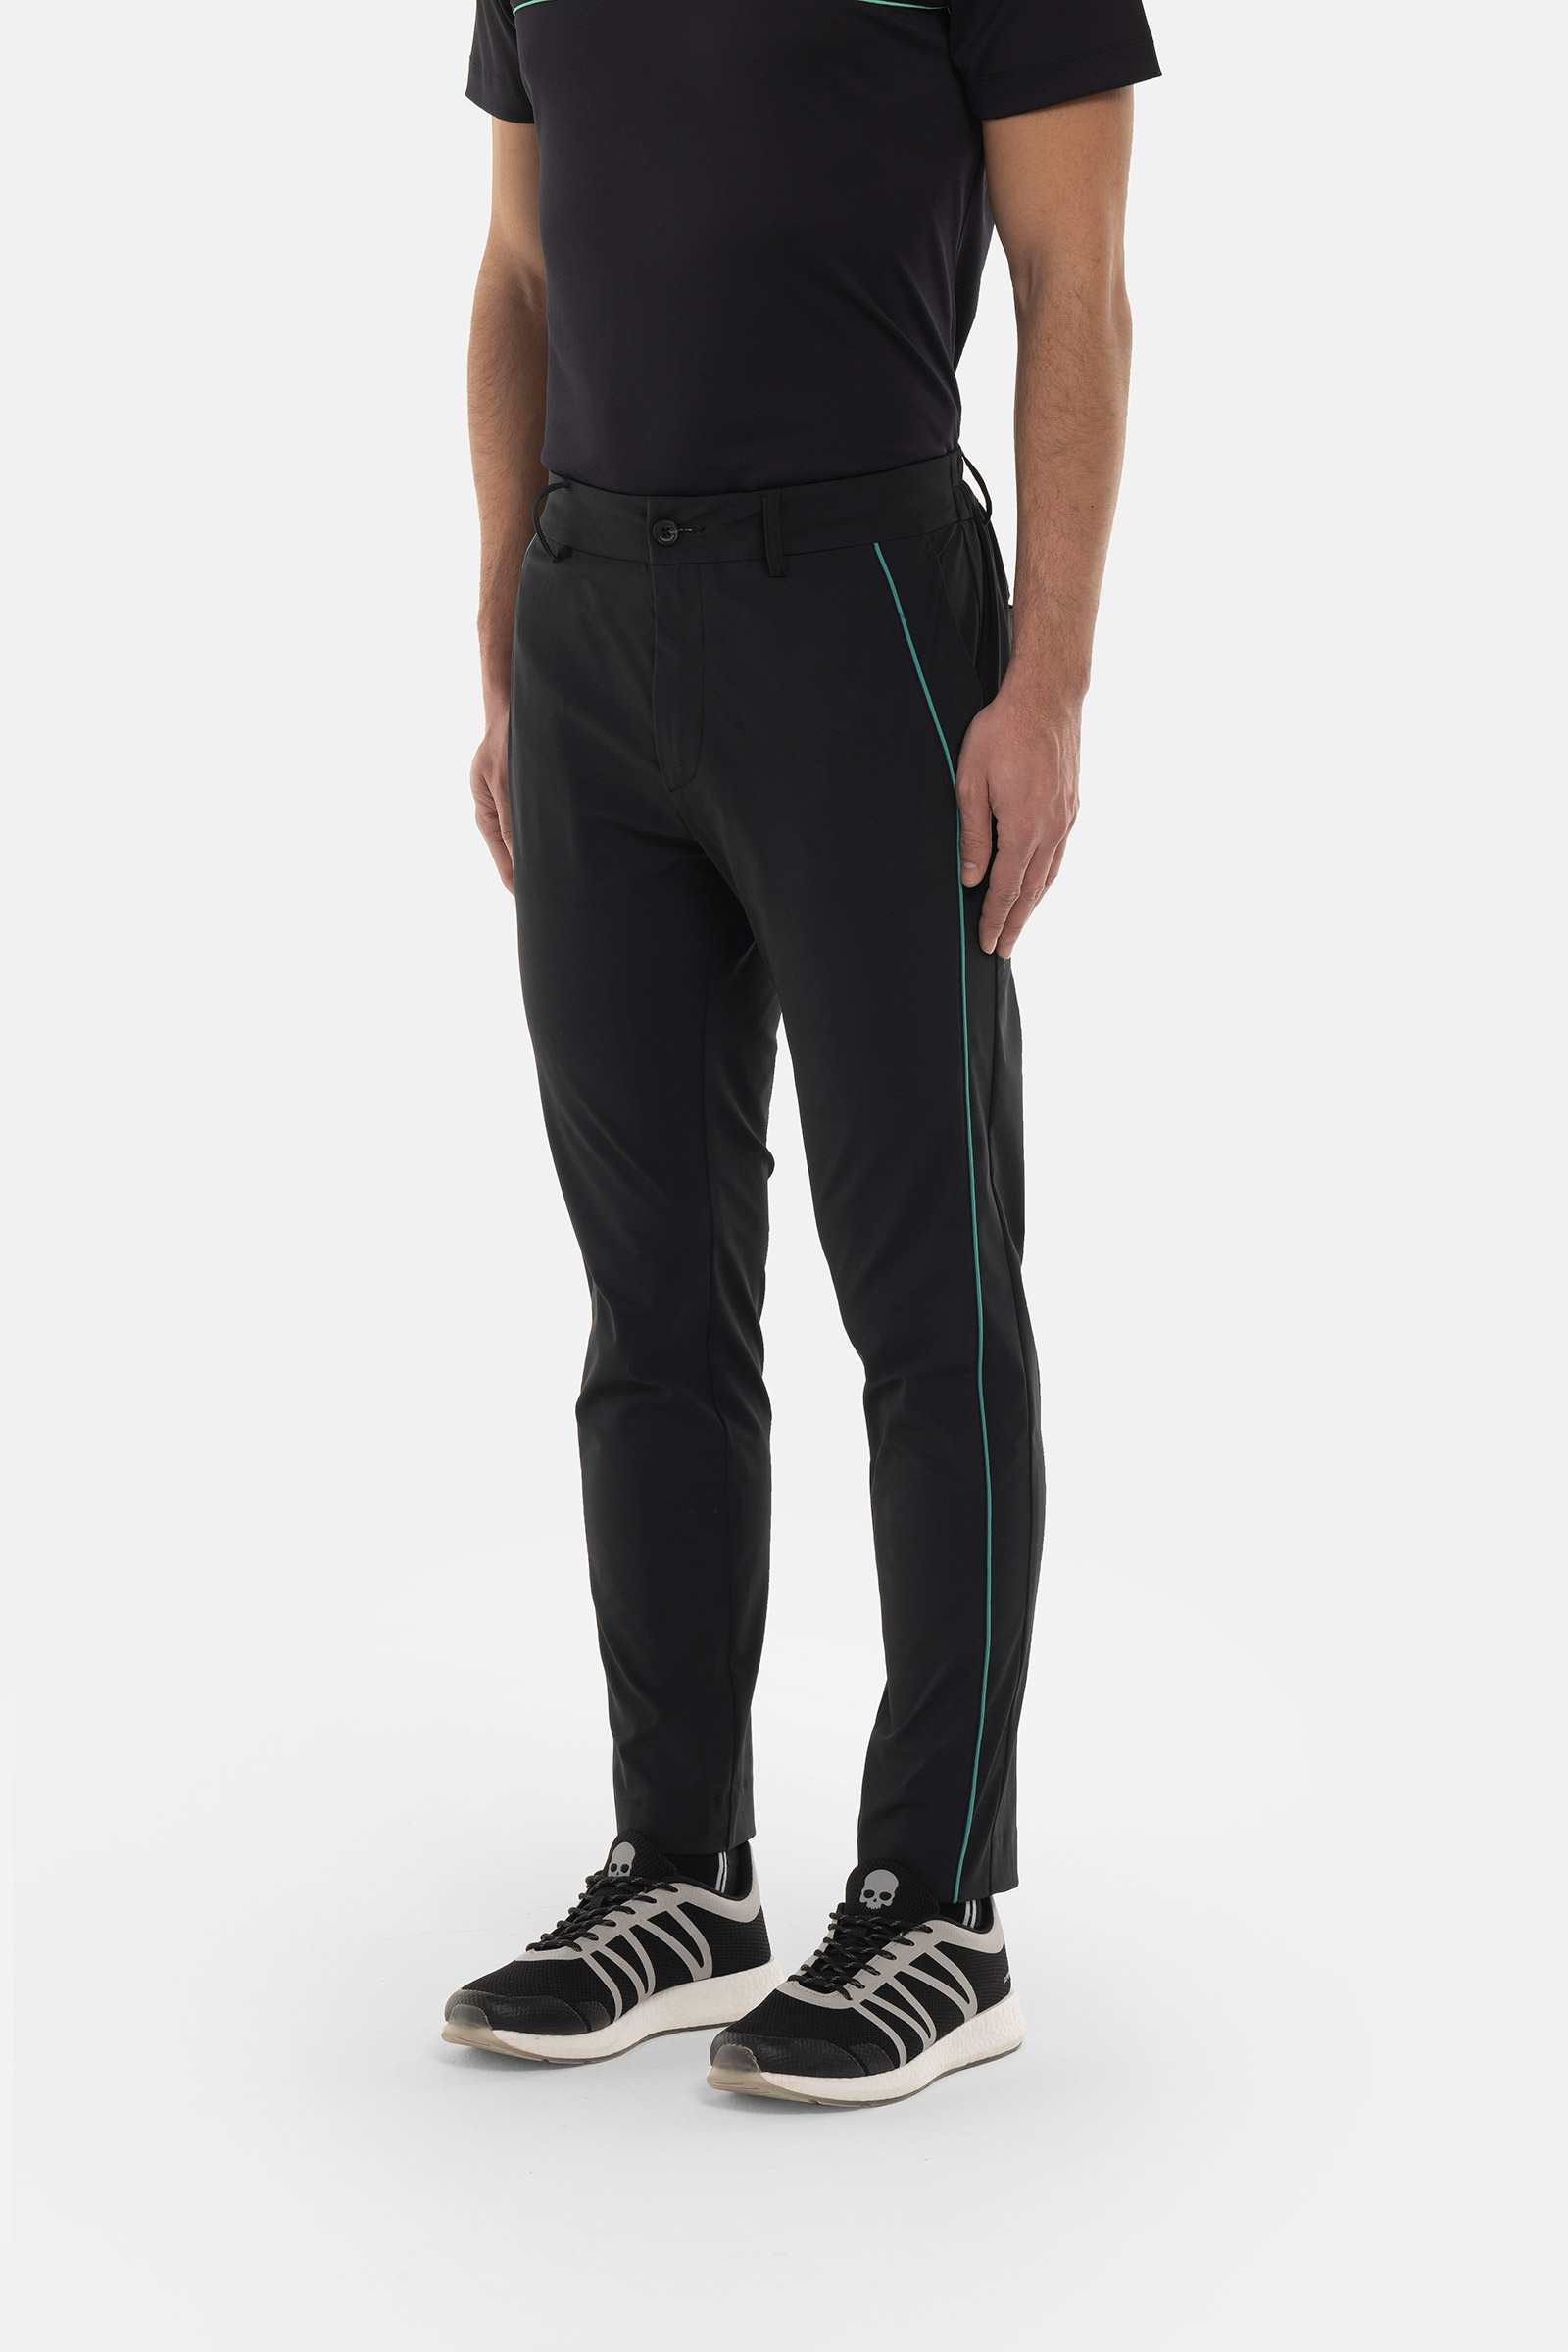 LINE TECH PANTS - BLACK,GREEN - Hydrogen - Luxury Sportwear